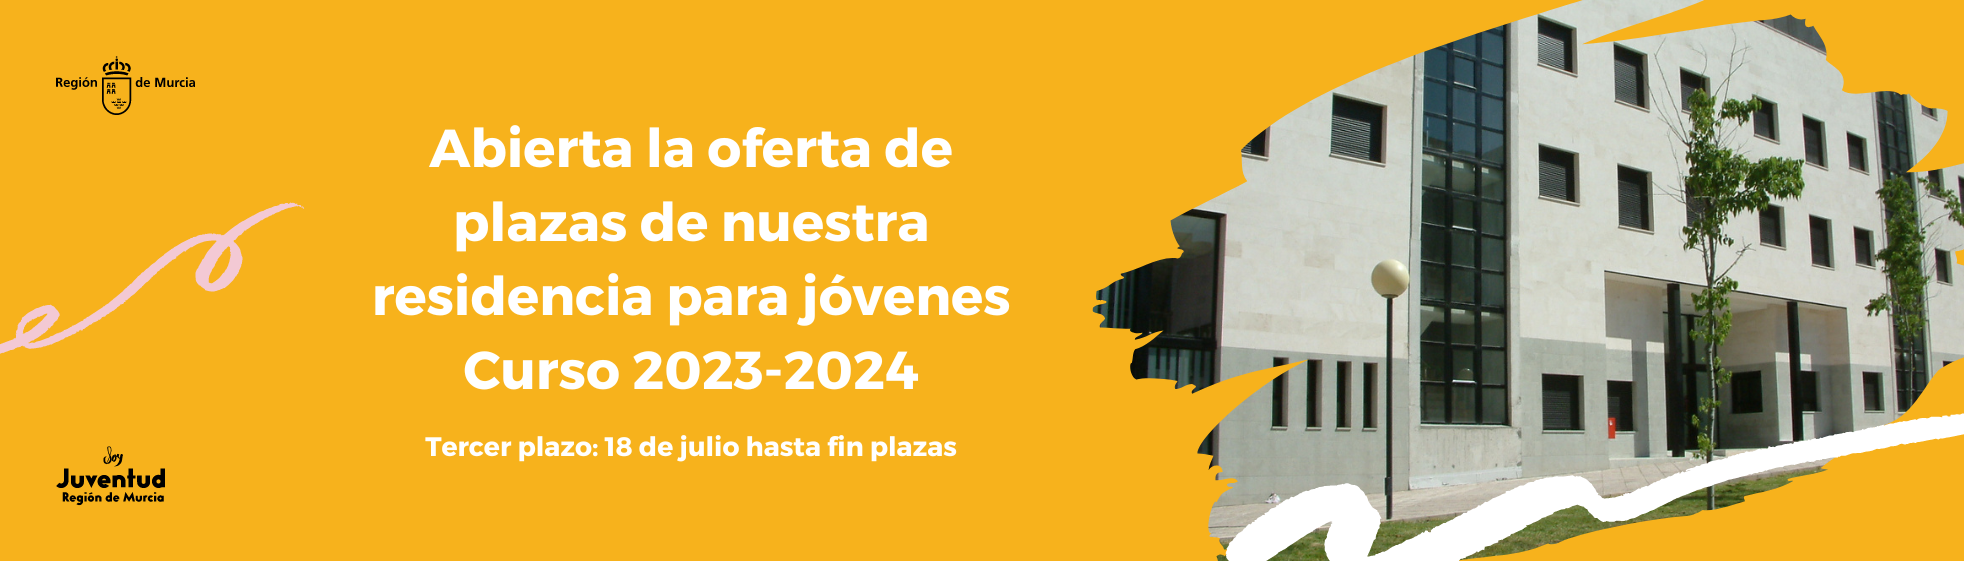 Abierta la oferta de plazas de nuestra residencia para jóvenes - Curso 2023-2024